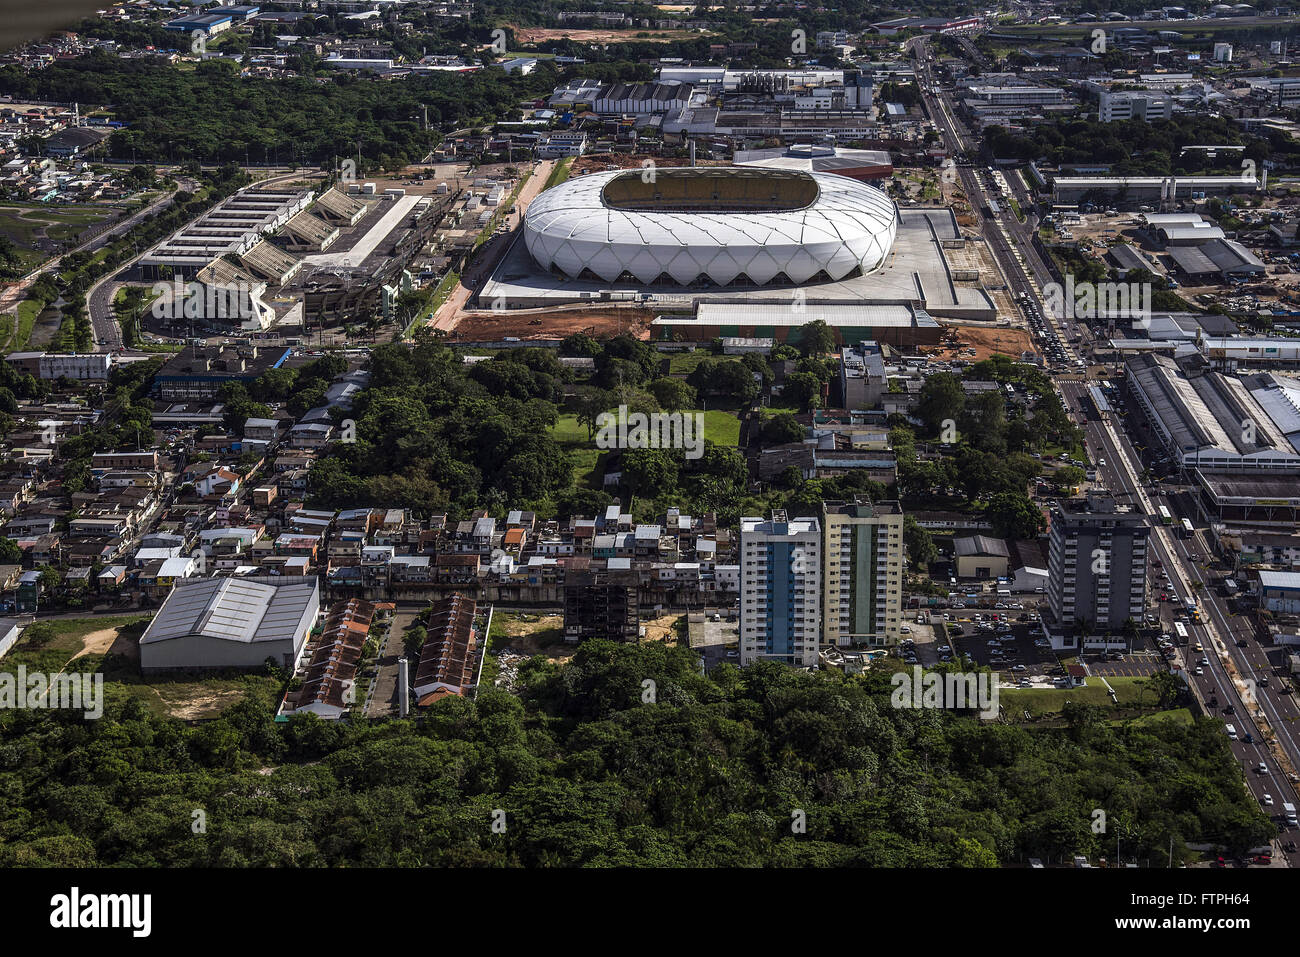 Vista aerea dell'Arena da Amazonia - stadio costruito per ospitare il 2014 della Coppa del Mondo FIFA Foto Stock